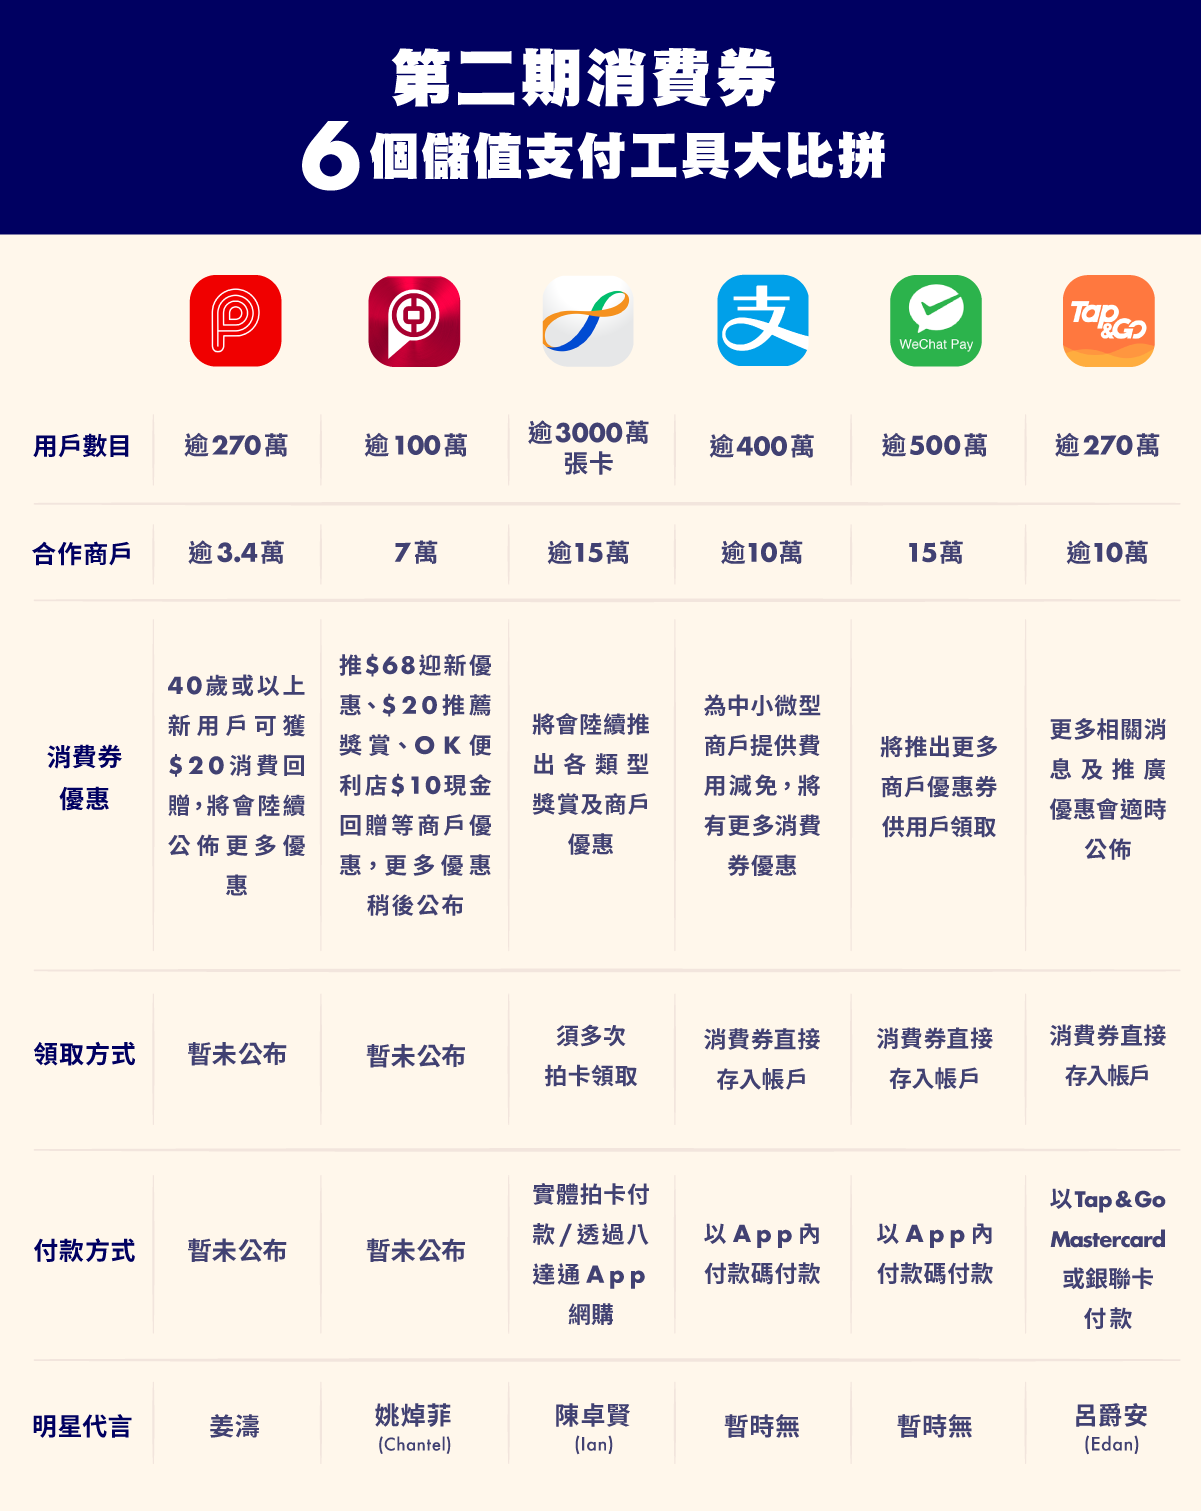 6 consumption voucher scheme comparison 第二期消費券 6 個儲值支付工具大比拼 PayMe BoC Pay 八達通 AlipayHK WeChat Pay HK Tap & Go 消費券